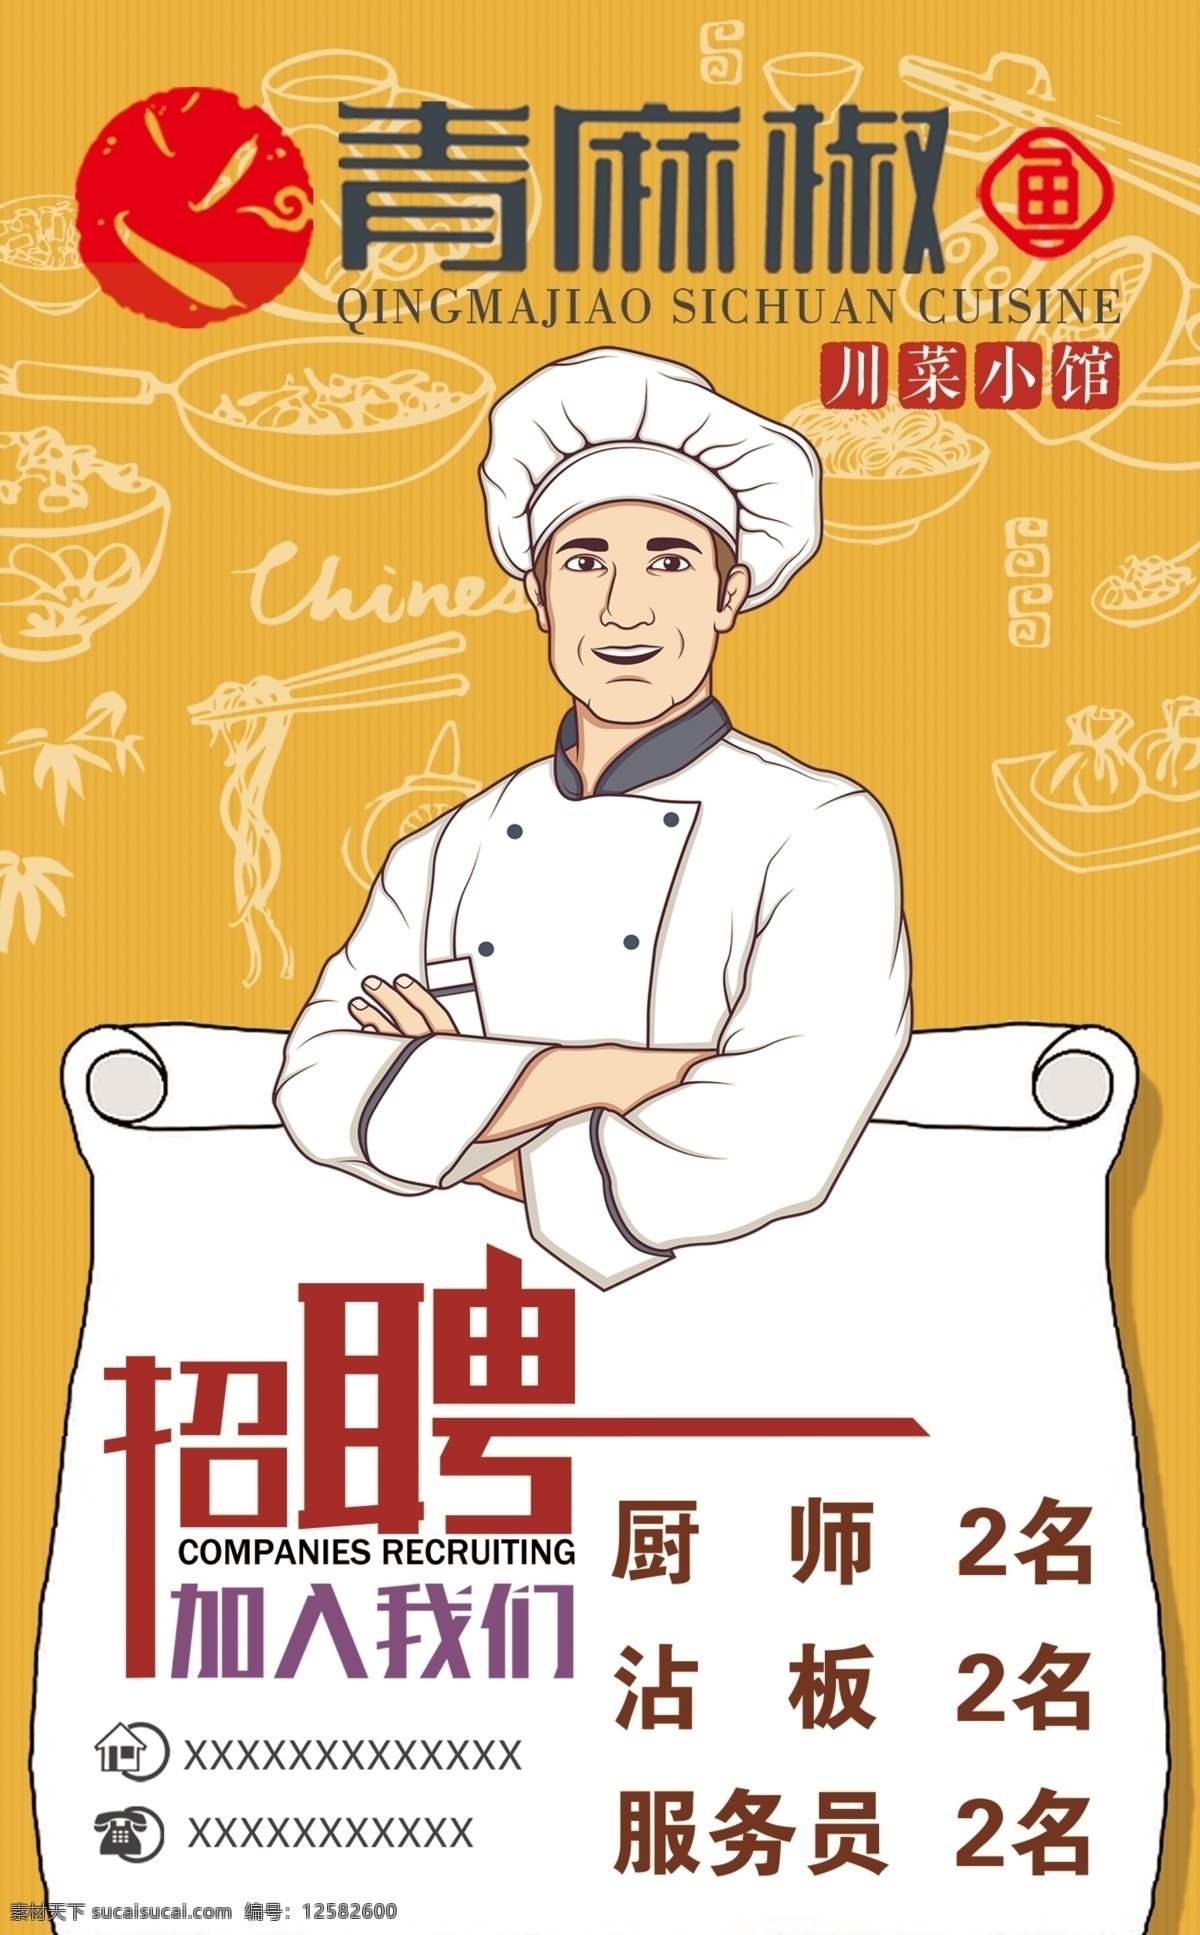 招聘海报图片 招聘 海报 卡通厨师 青麻椒 logo 餐饮 美食 美味